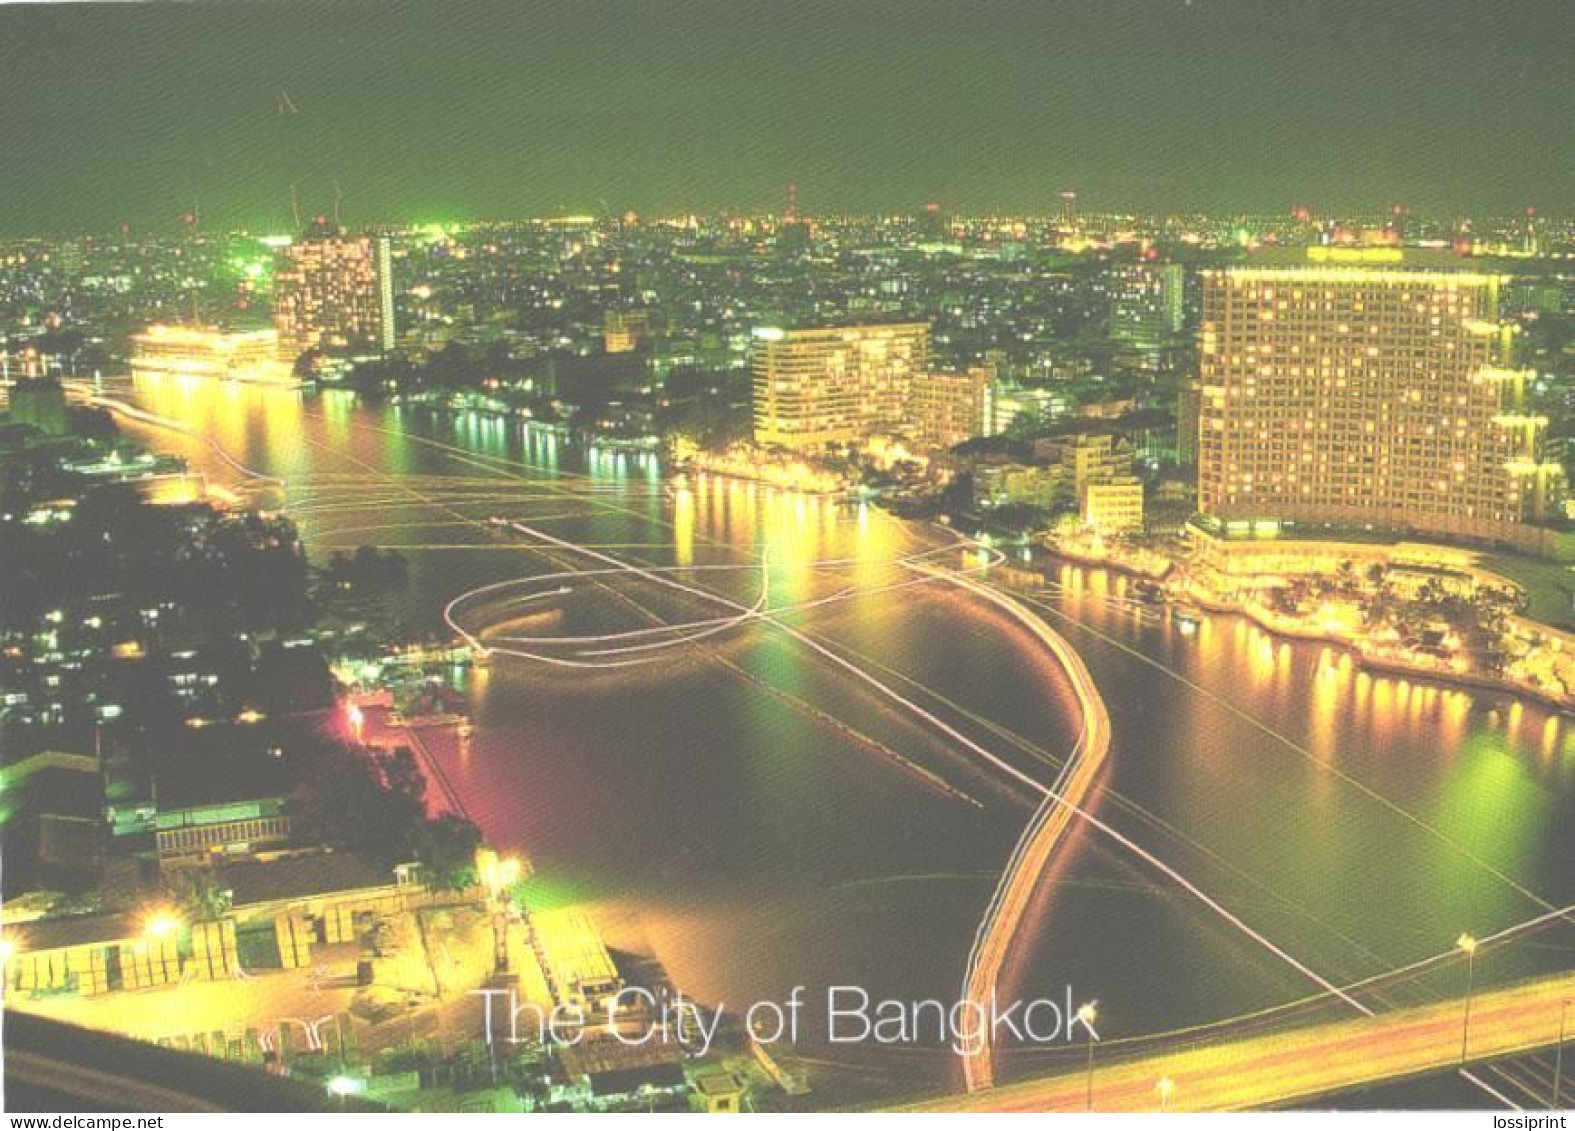 Thailand:Bangkok At Night - Thaïlande